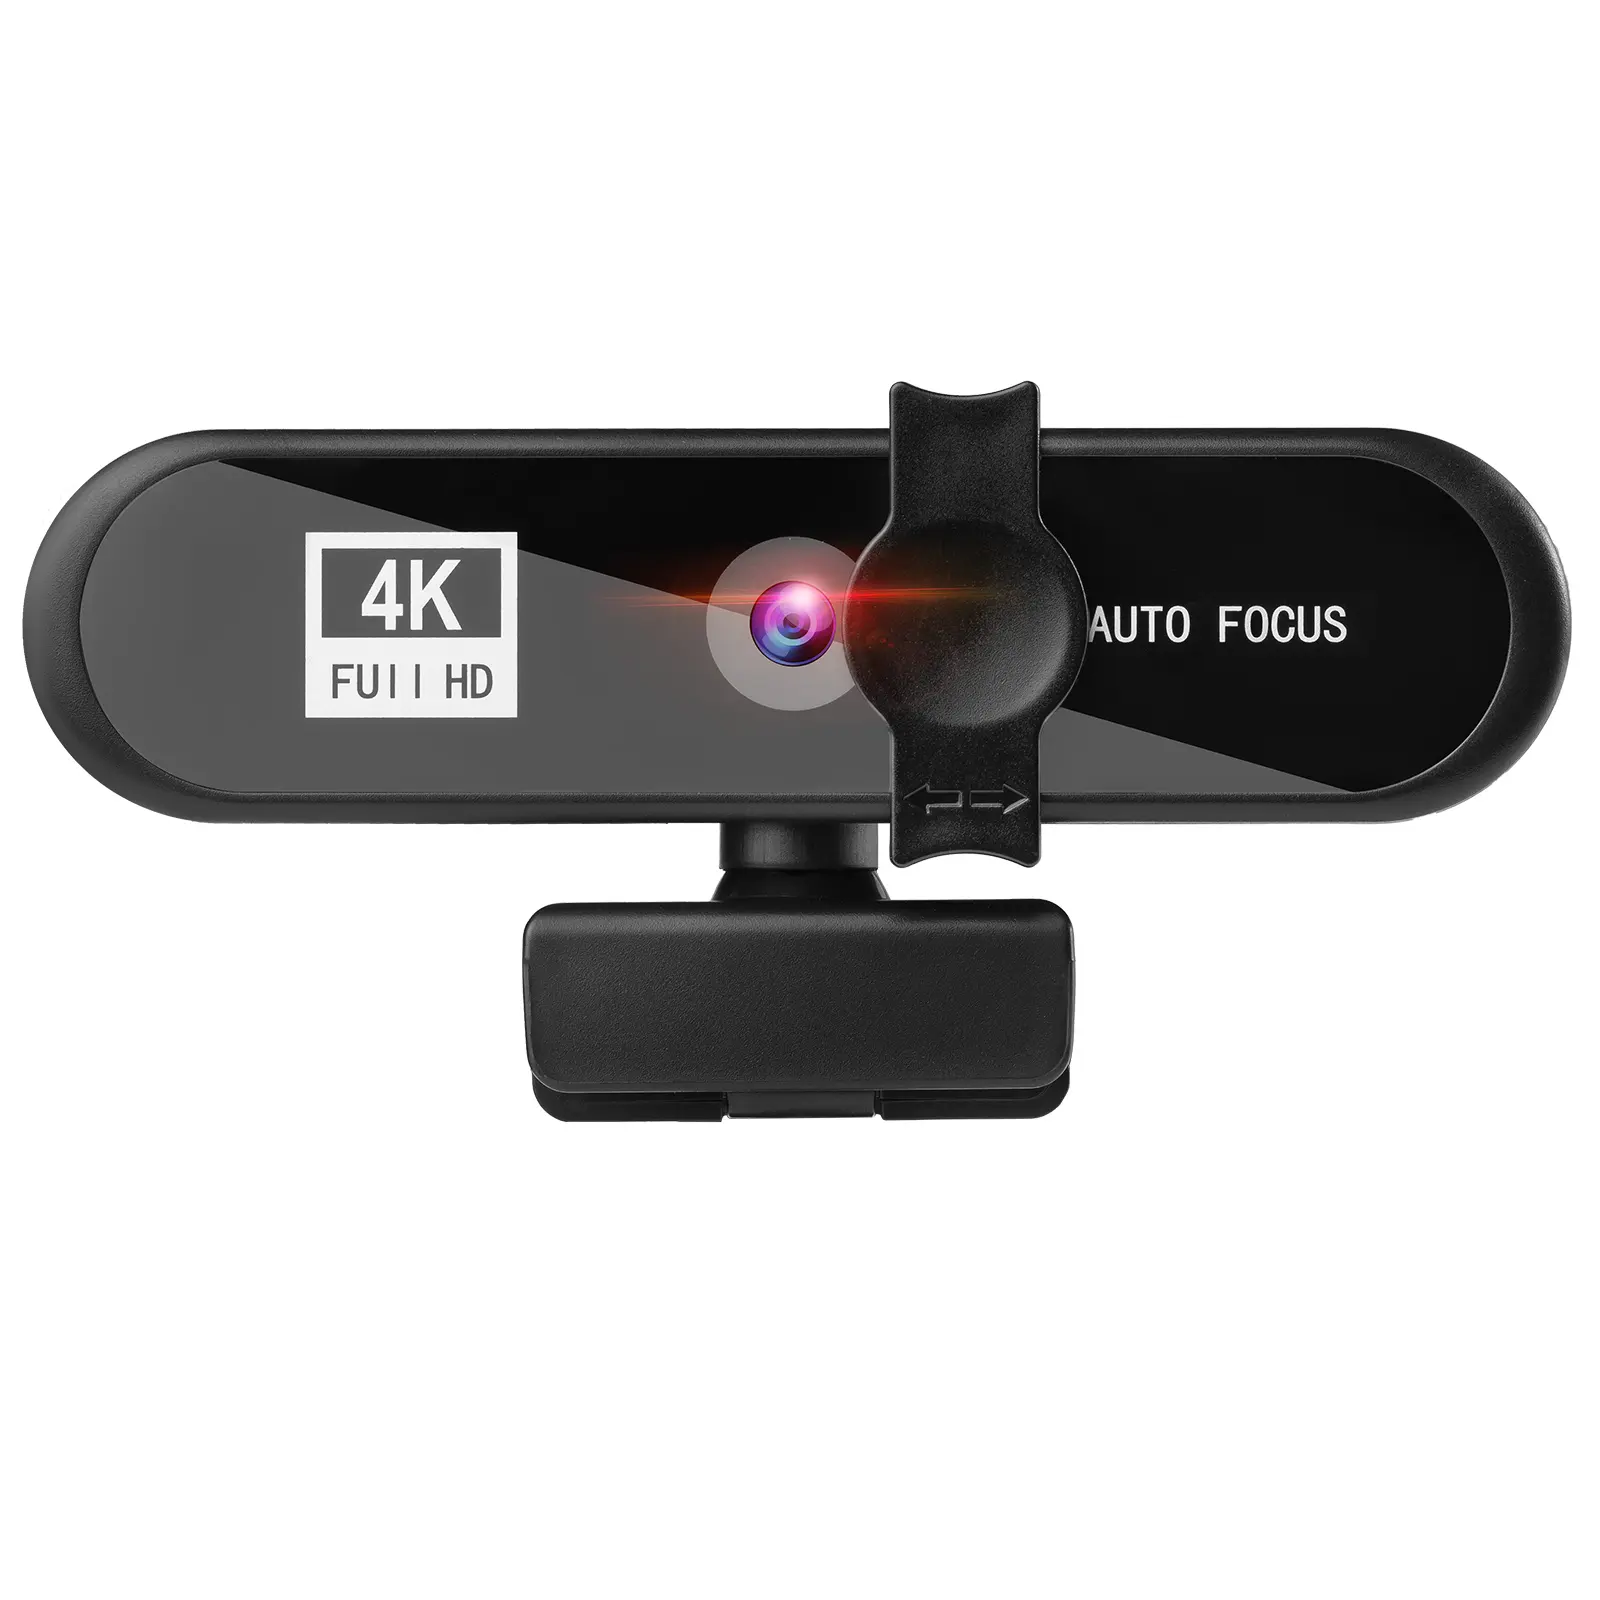 1K/2K/4K USB वेबकैम फुल HD 1080P वेब कैमरा माइक्रोफ़ोन USB वेबकैम के साथ ऑटोफोकस कंप्यूटर कवर ऑडियो लैपटॉप वीडियो वेबकैम